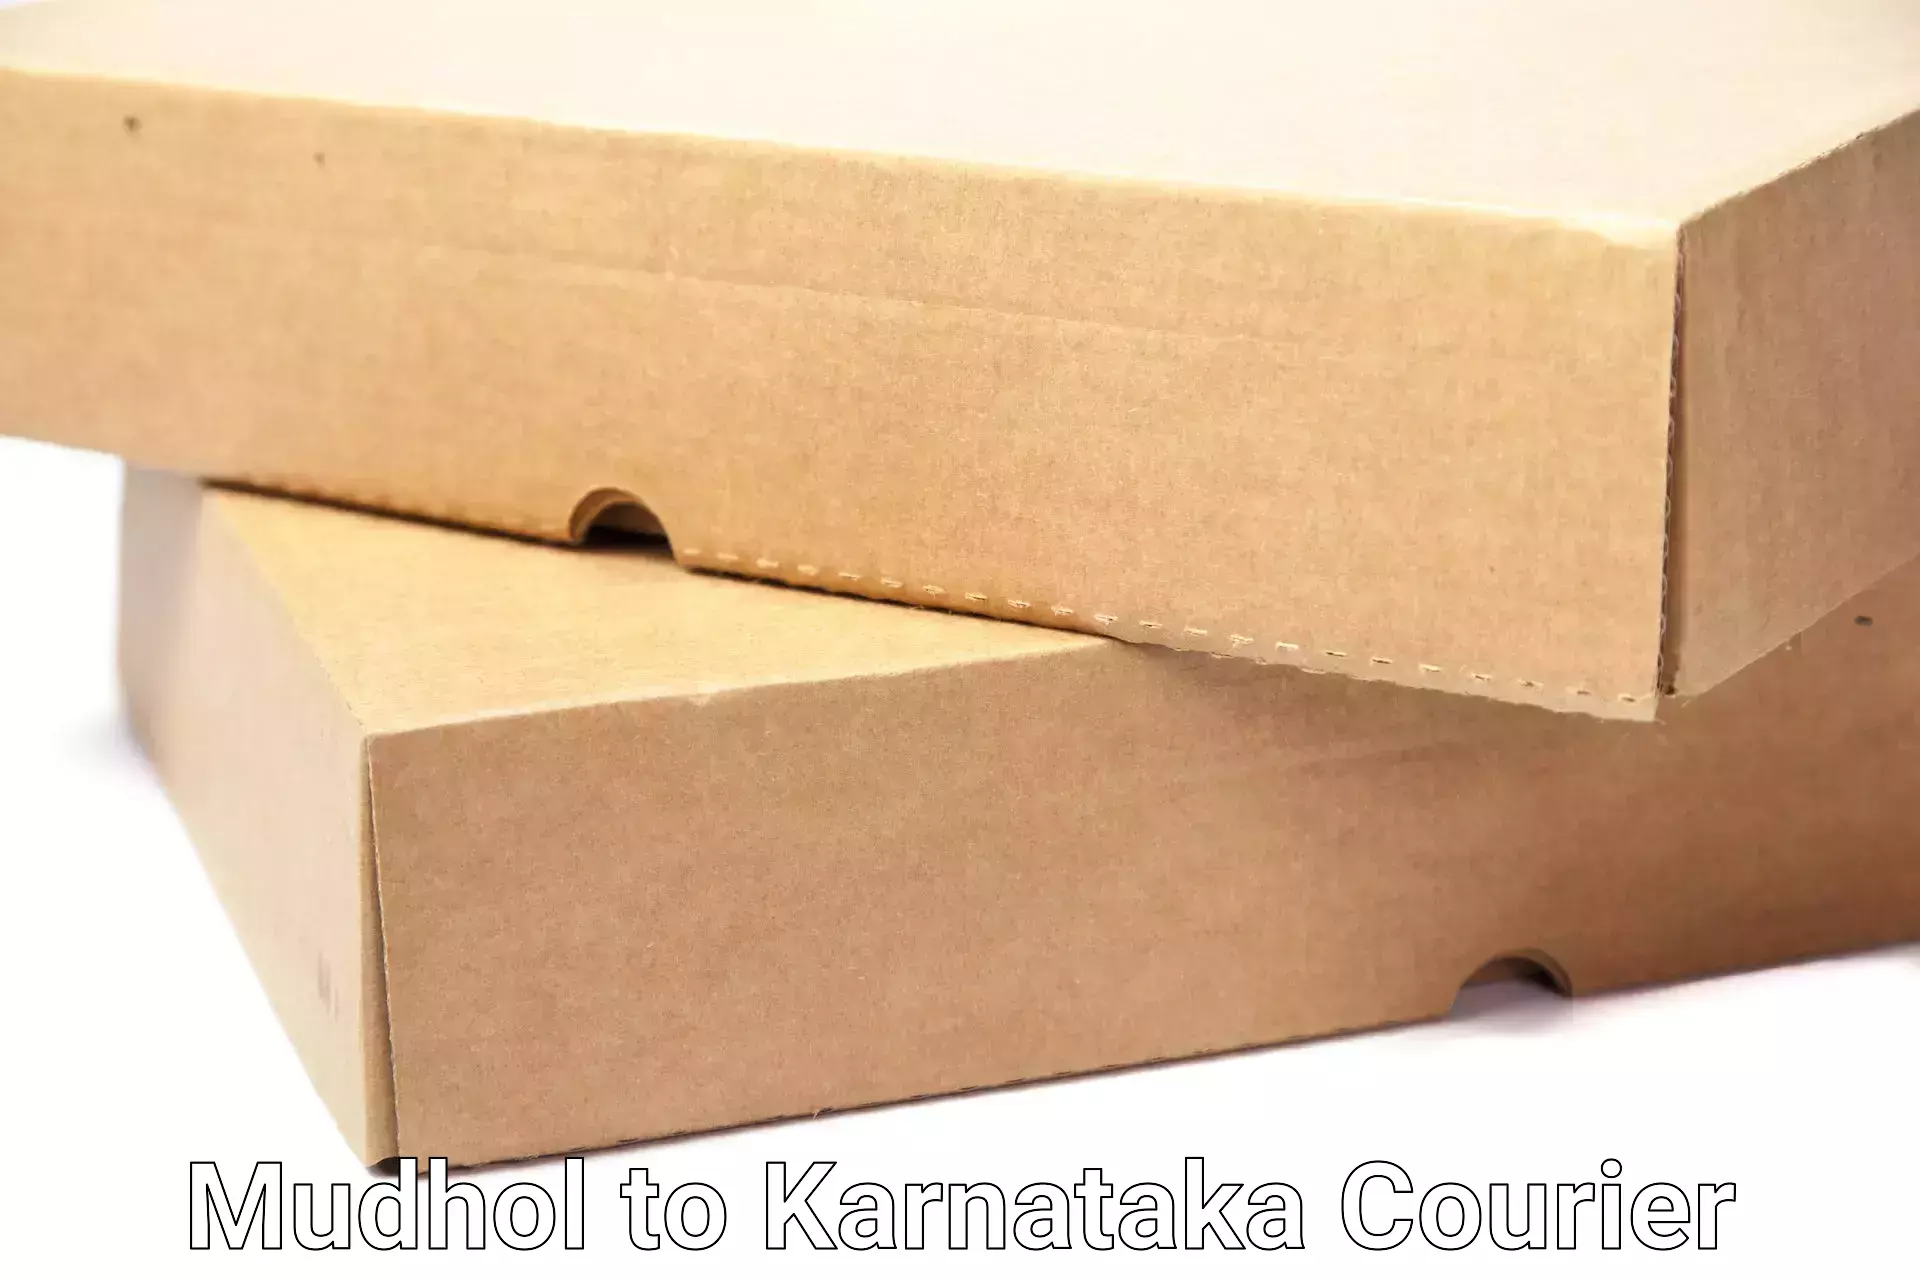 Efficient moving company Mudhol to Yenepoya Mangalore